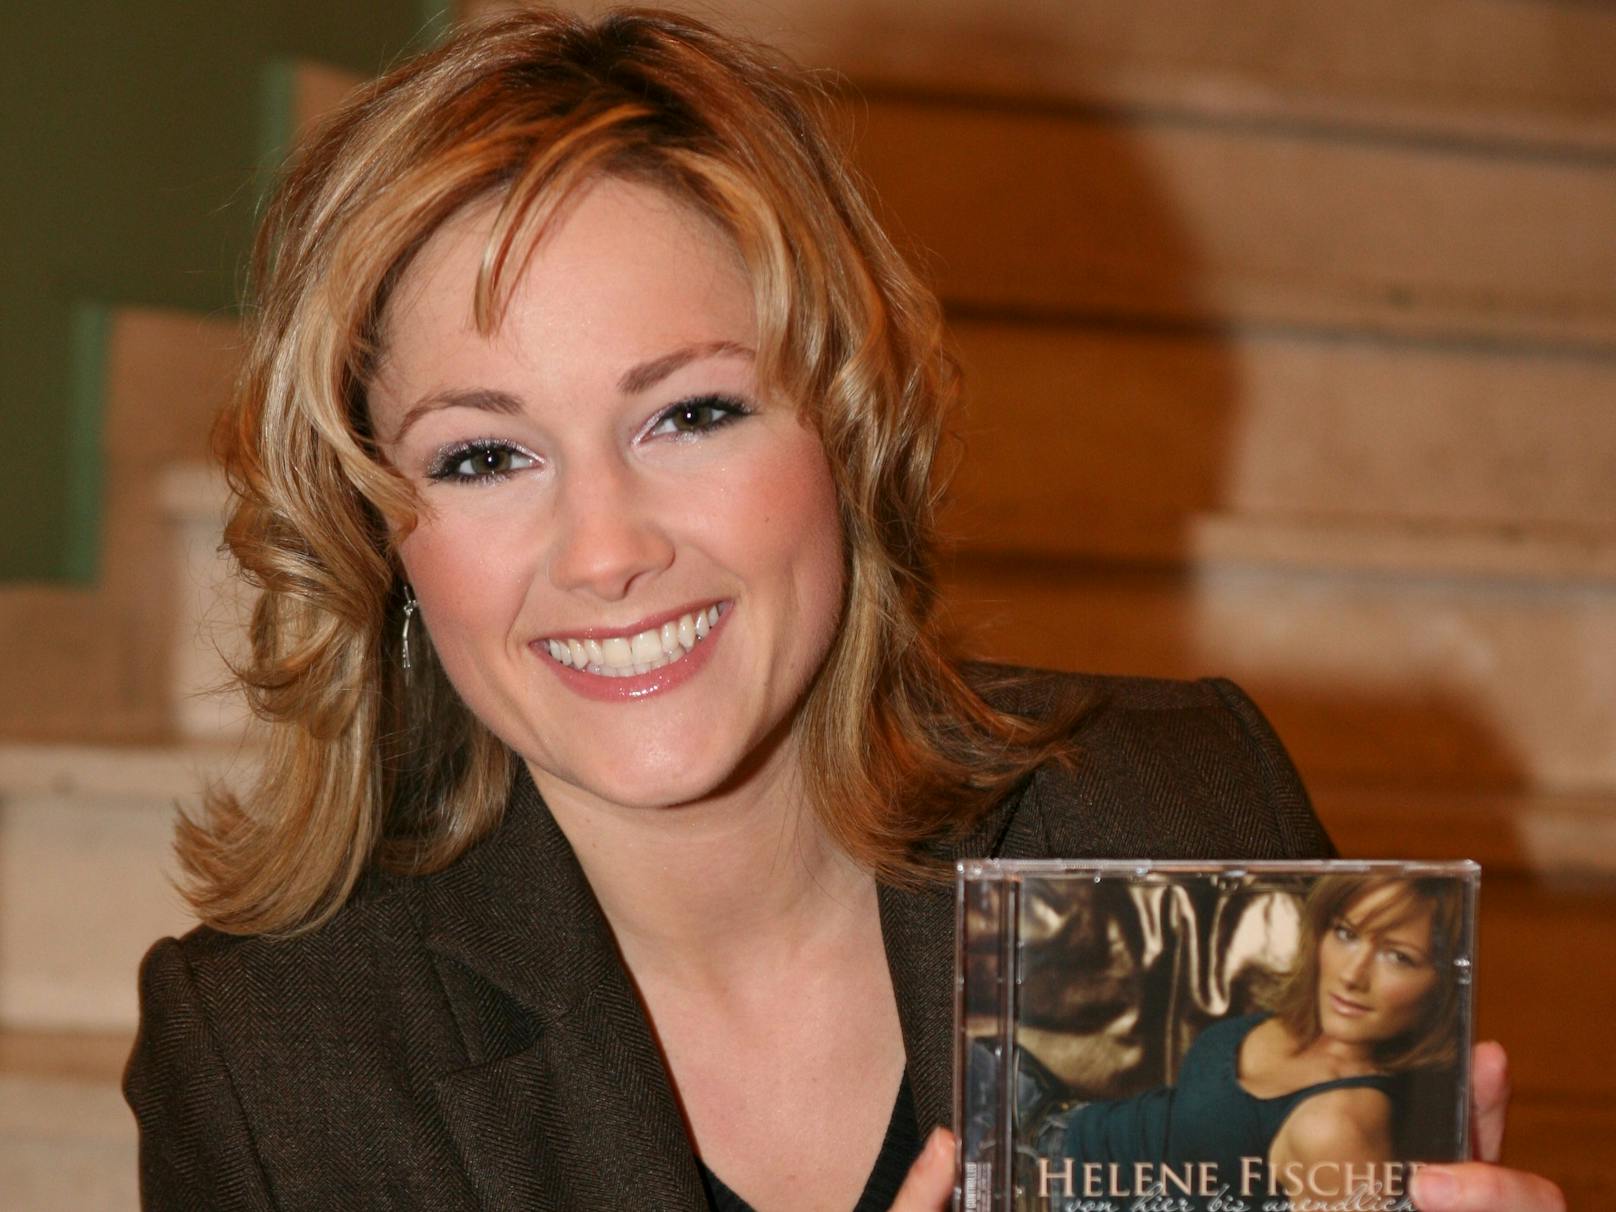 2004 schickte Helene Mutter eine Demo-CD an den Künstlermanager Uwe Kanthak. Daraufhin nahm dieser Kontakt mit dem Produzenten Jean Frankfurter auf, und mit 20 Jahren erhielt sie ihren ersten Plattenvertrag.&nbsp;Am 3. Februar 2006 erschien ihr erstes Album "Von hier bis unendlich".